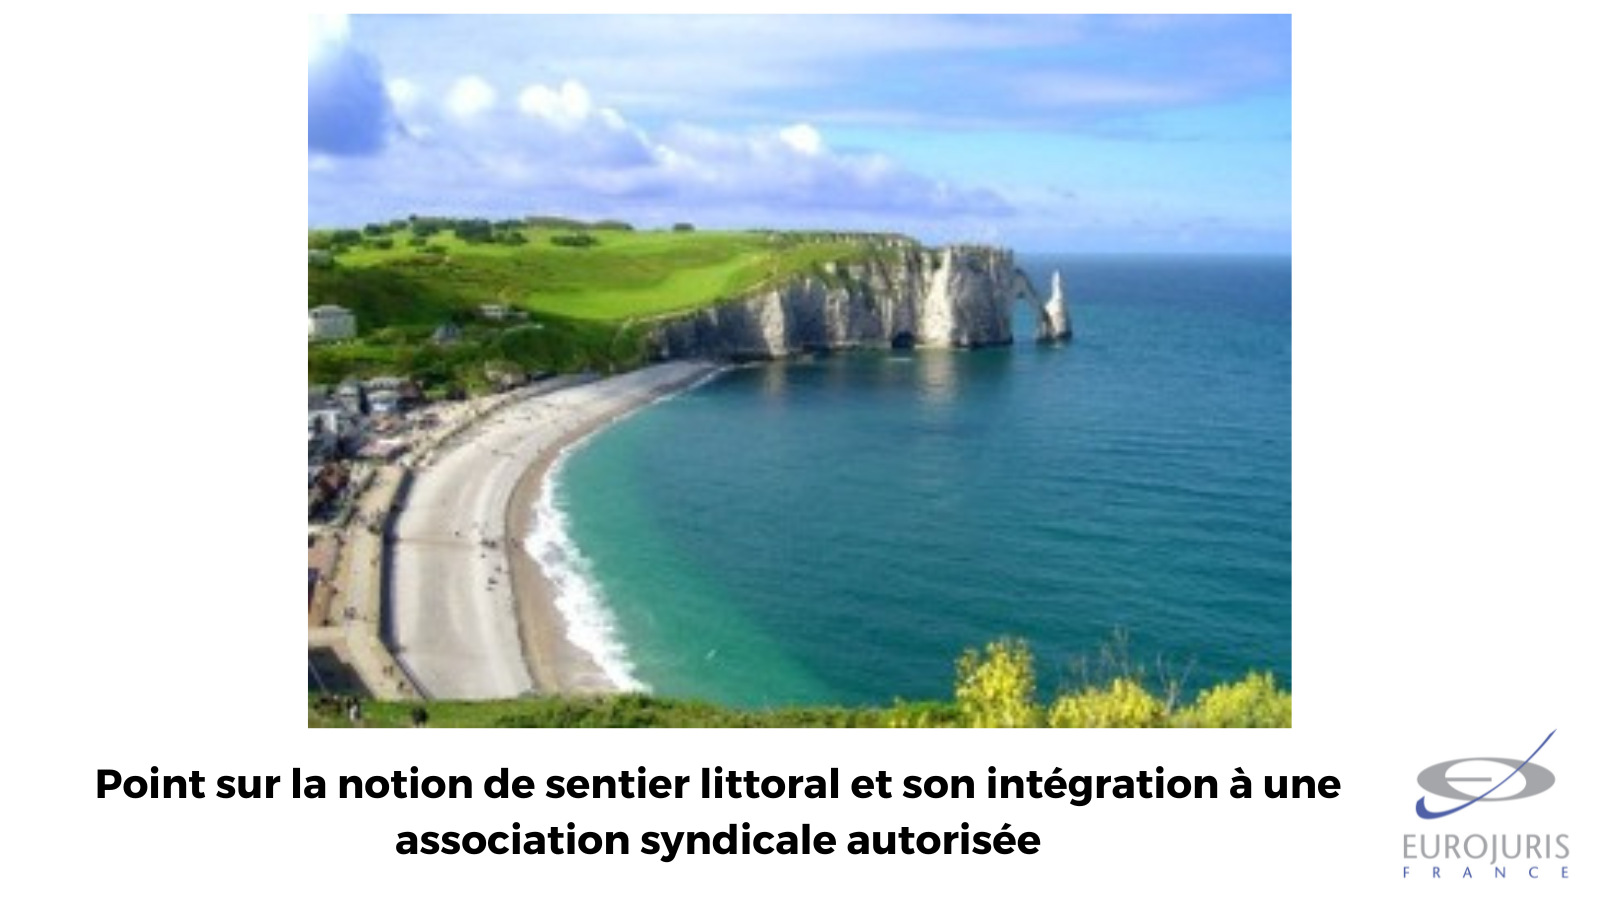 Point sur la notion de sentier littoral et son intégration à une association syndicale autorisée…